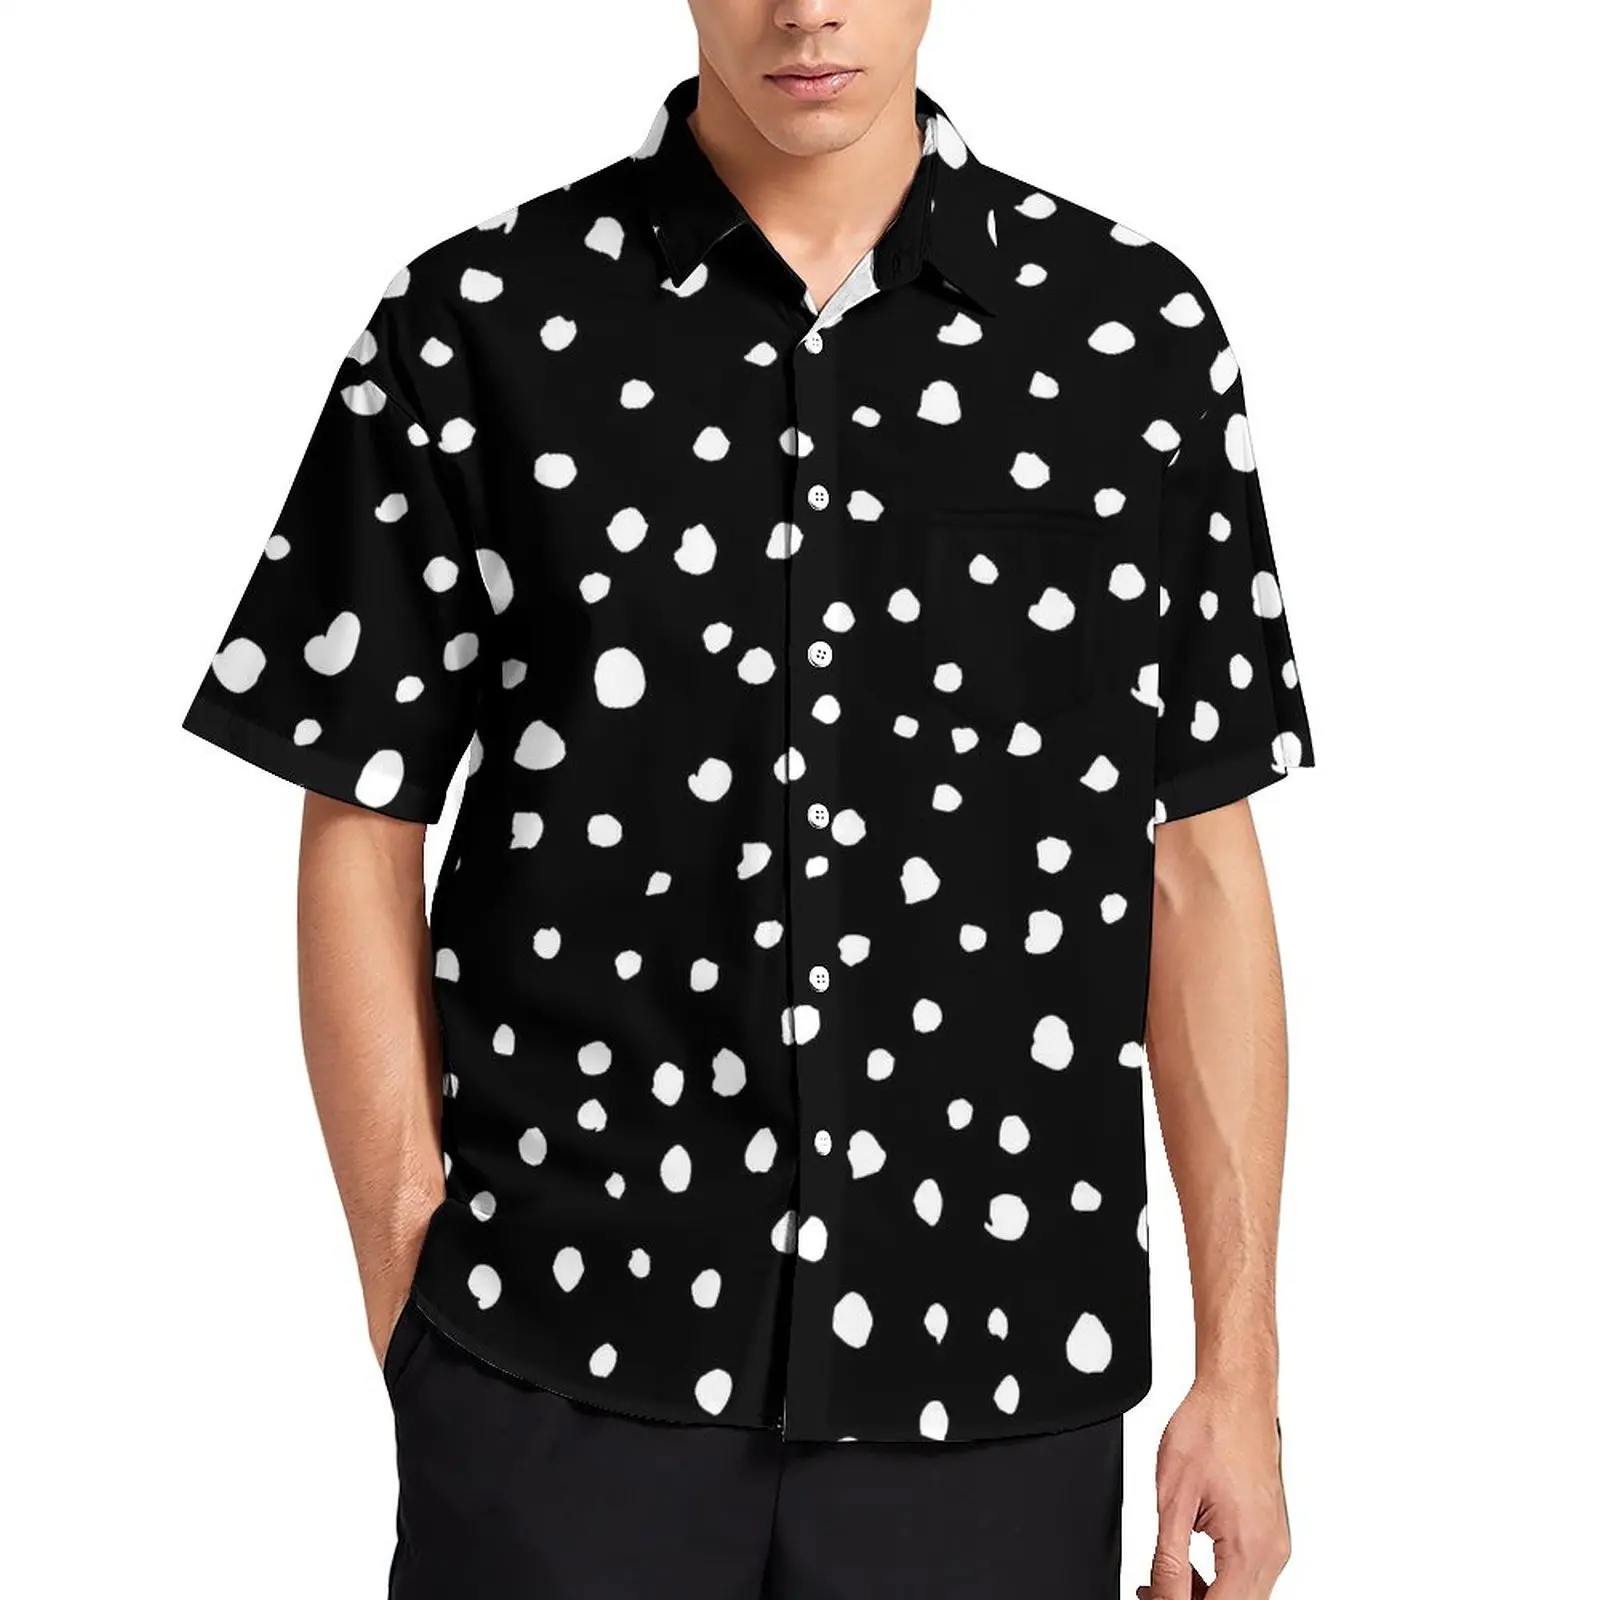 

Dalmatian Spots Print Vacation Shirt Mens White Polka Dots Casual Shirts Hawaii Short Sleeve Graphic Novelty Oversized Blouses